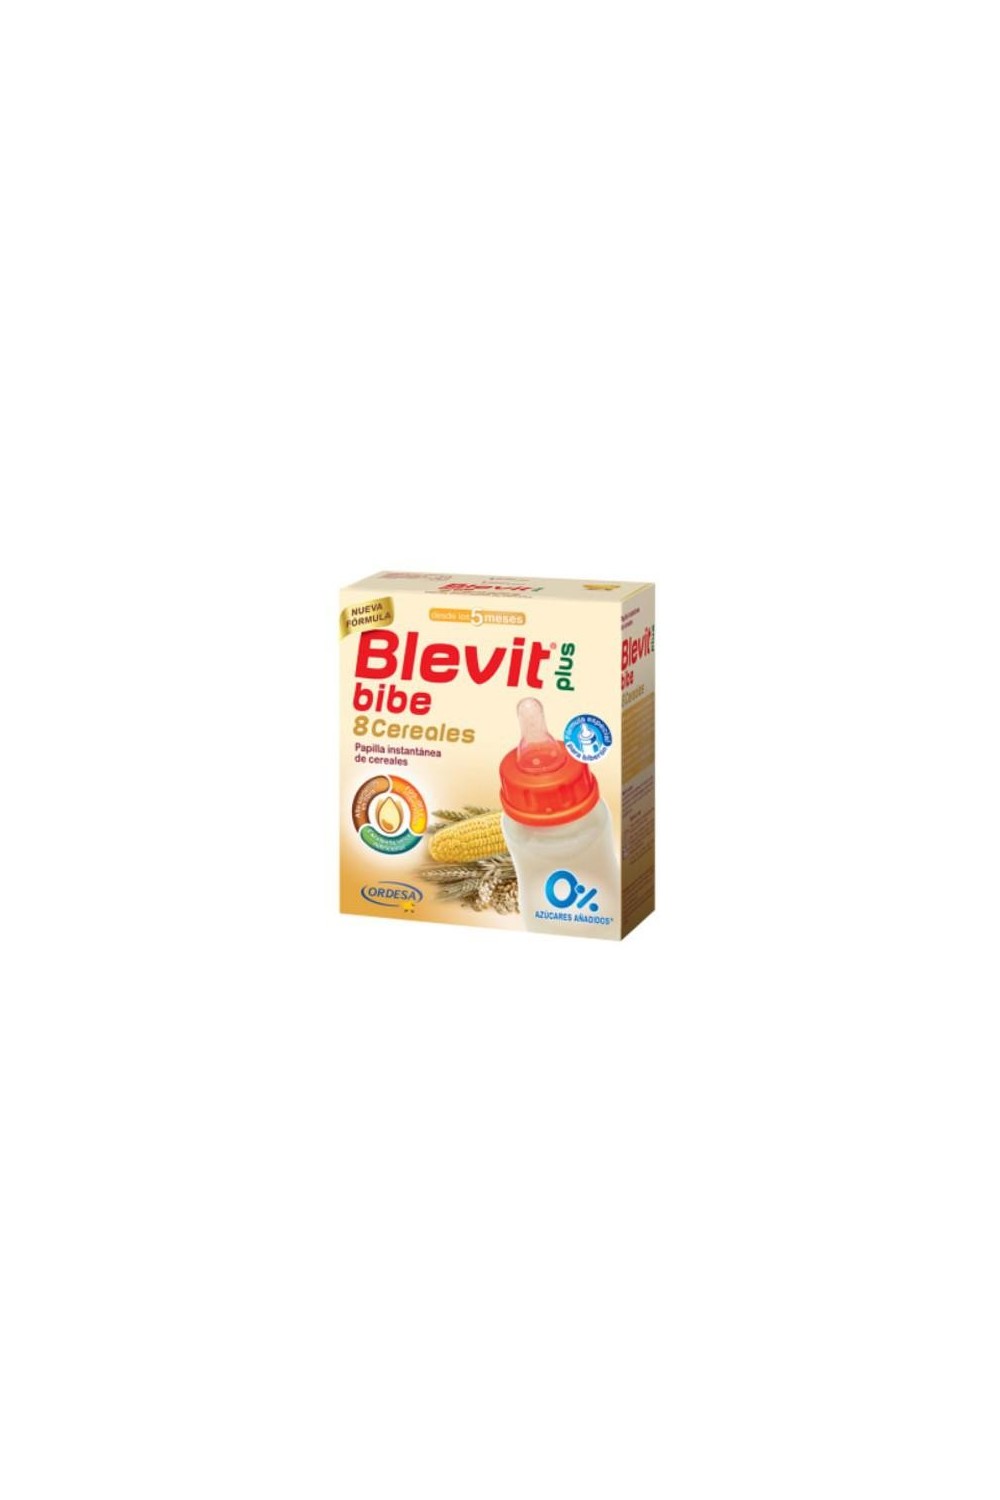 Ordesa Blevit Papilla 8 Cereals For Baby Bottle 600g